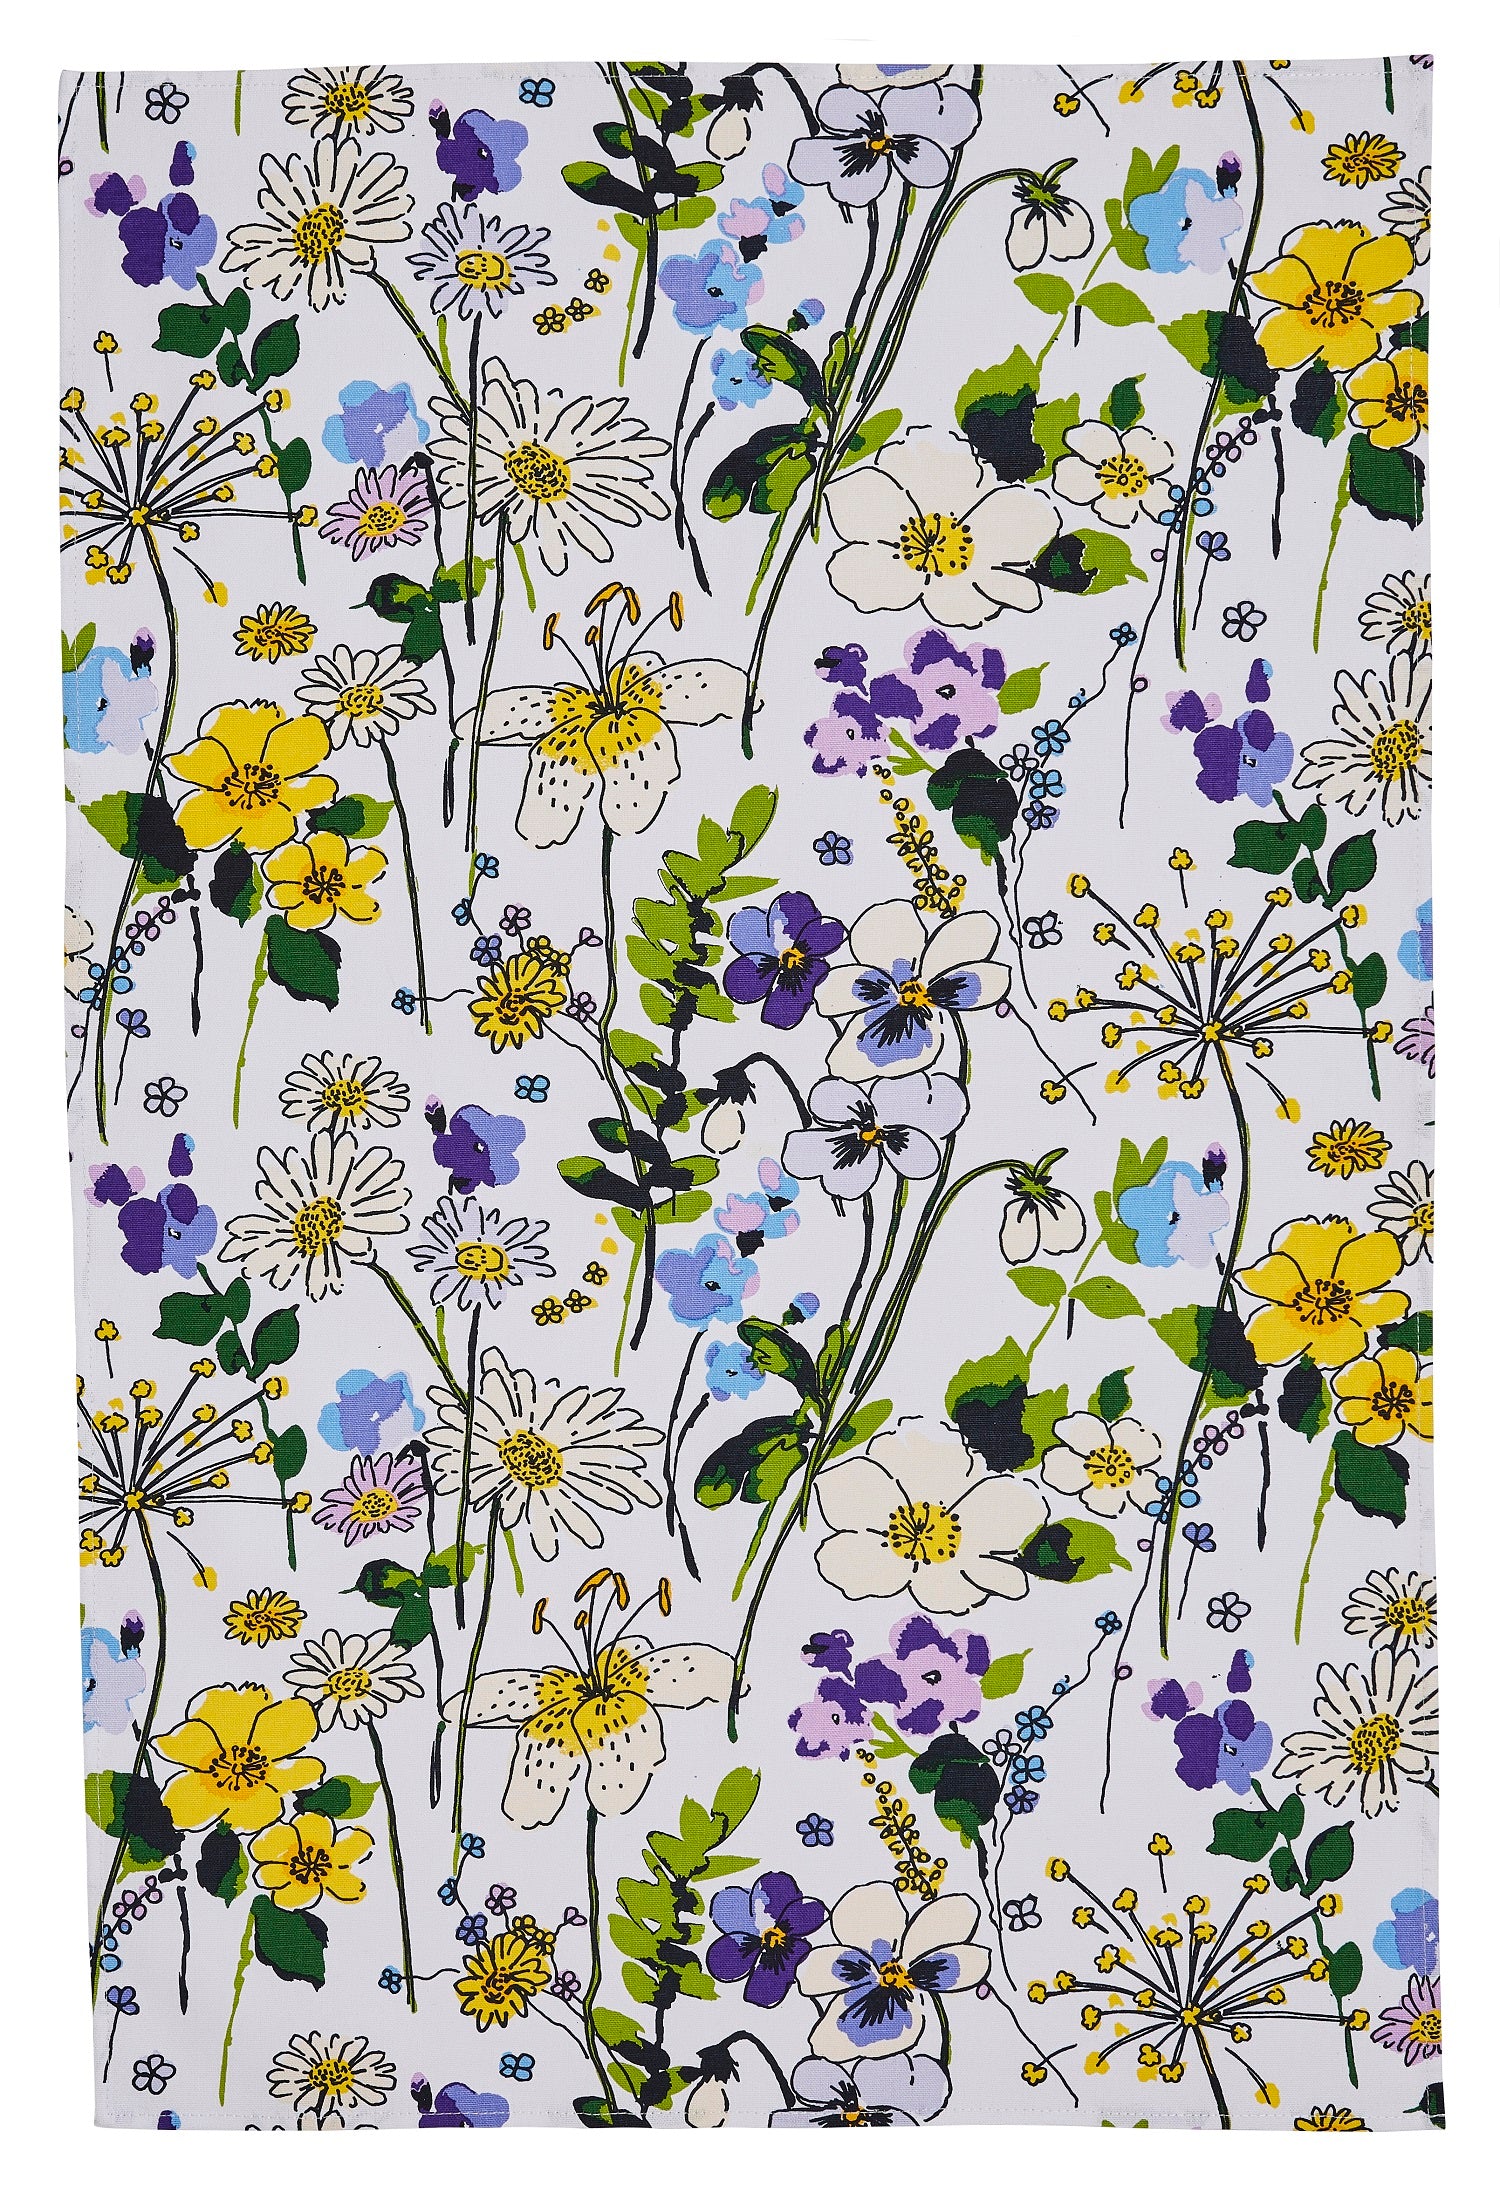 Ulster Weavers, "Wildflowers", Pure cotton printed tea towel. - Home Landing